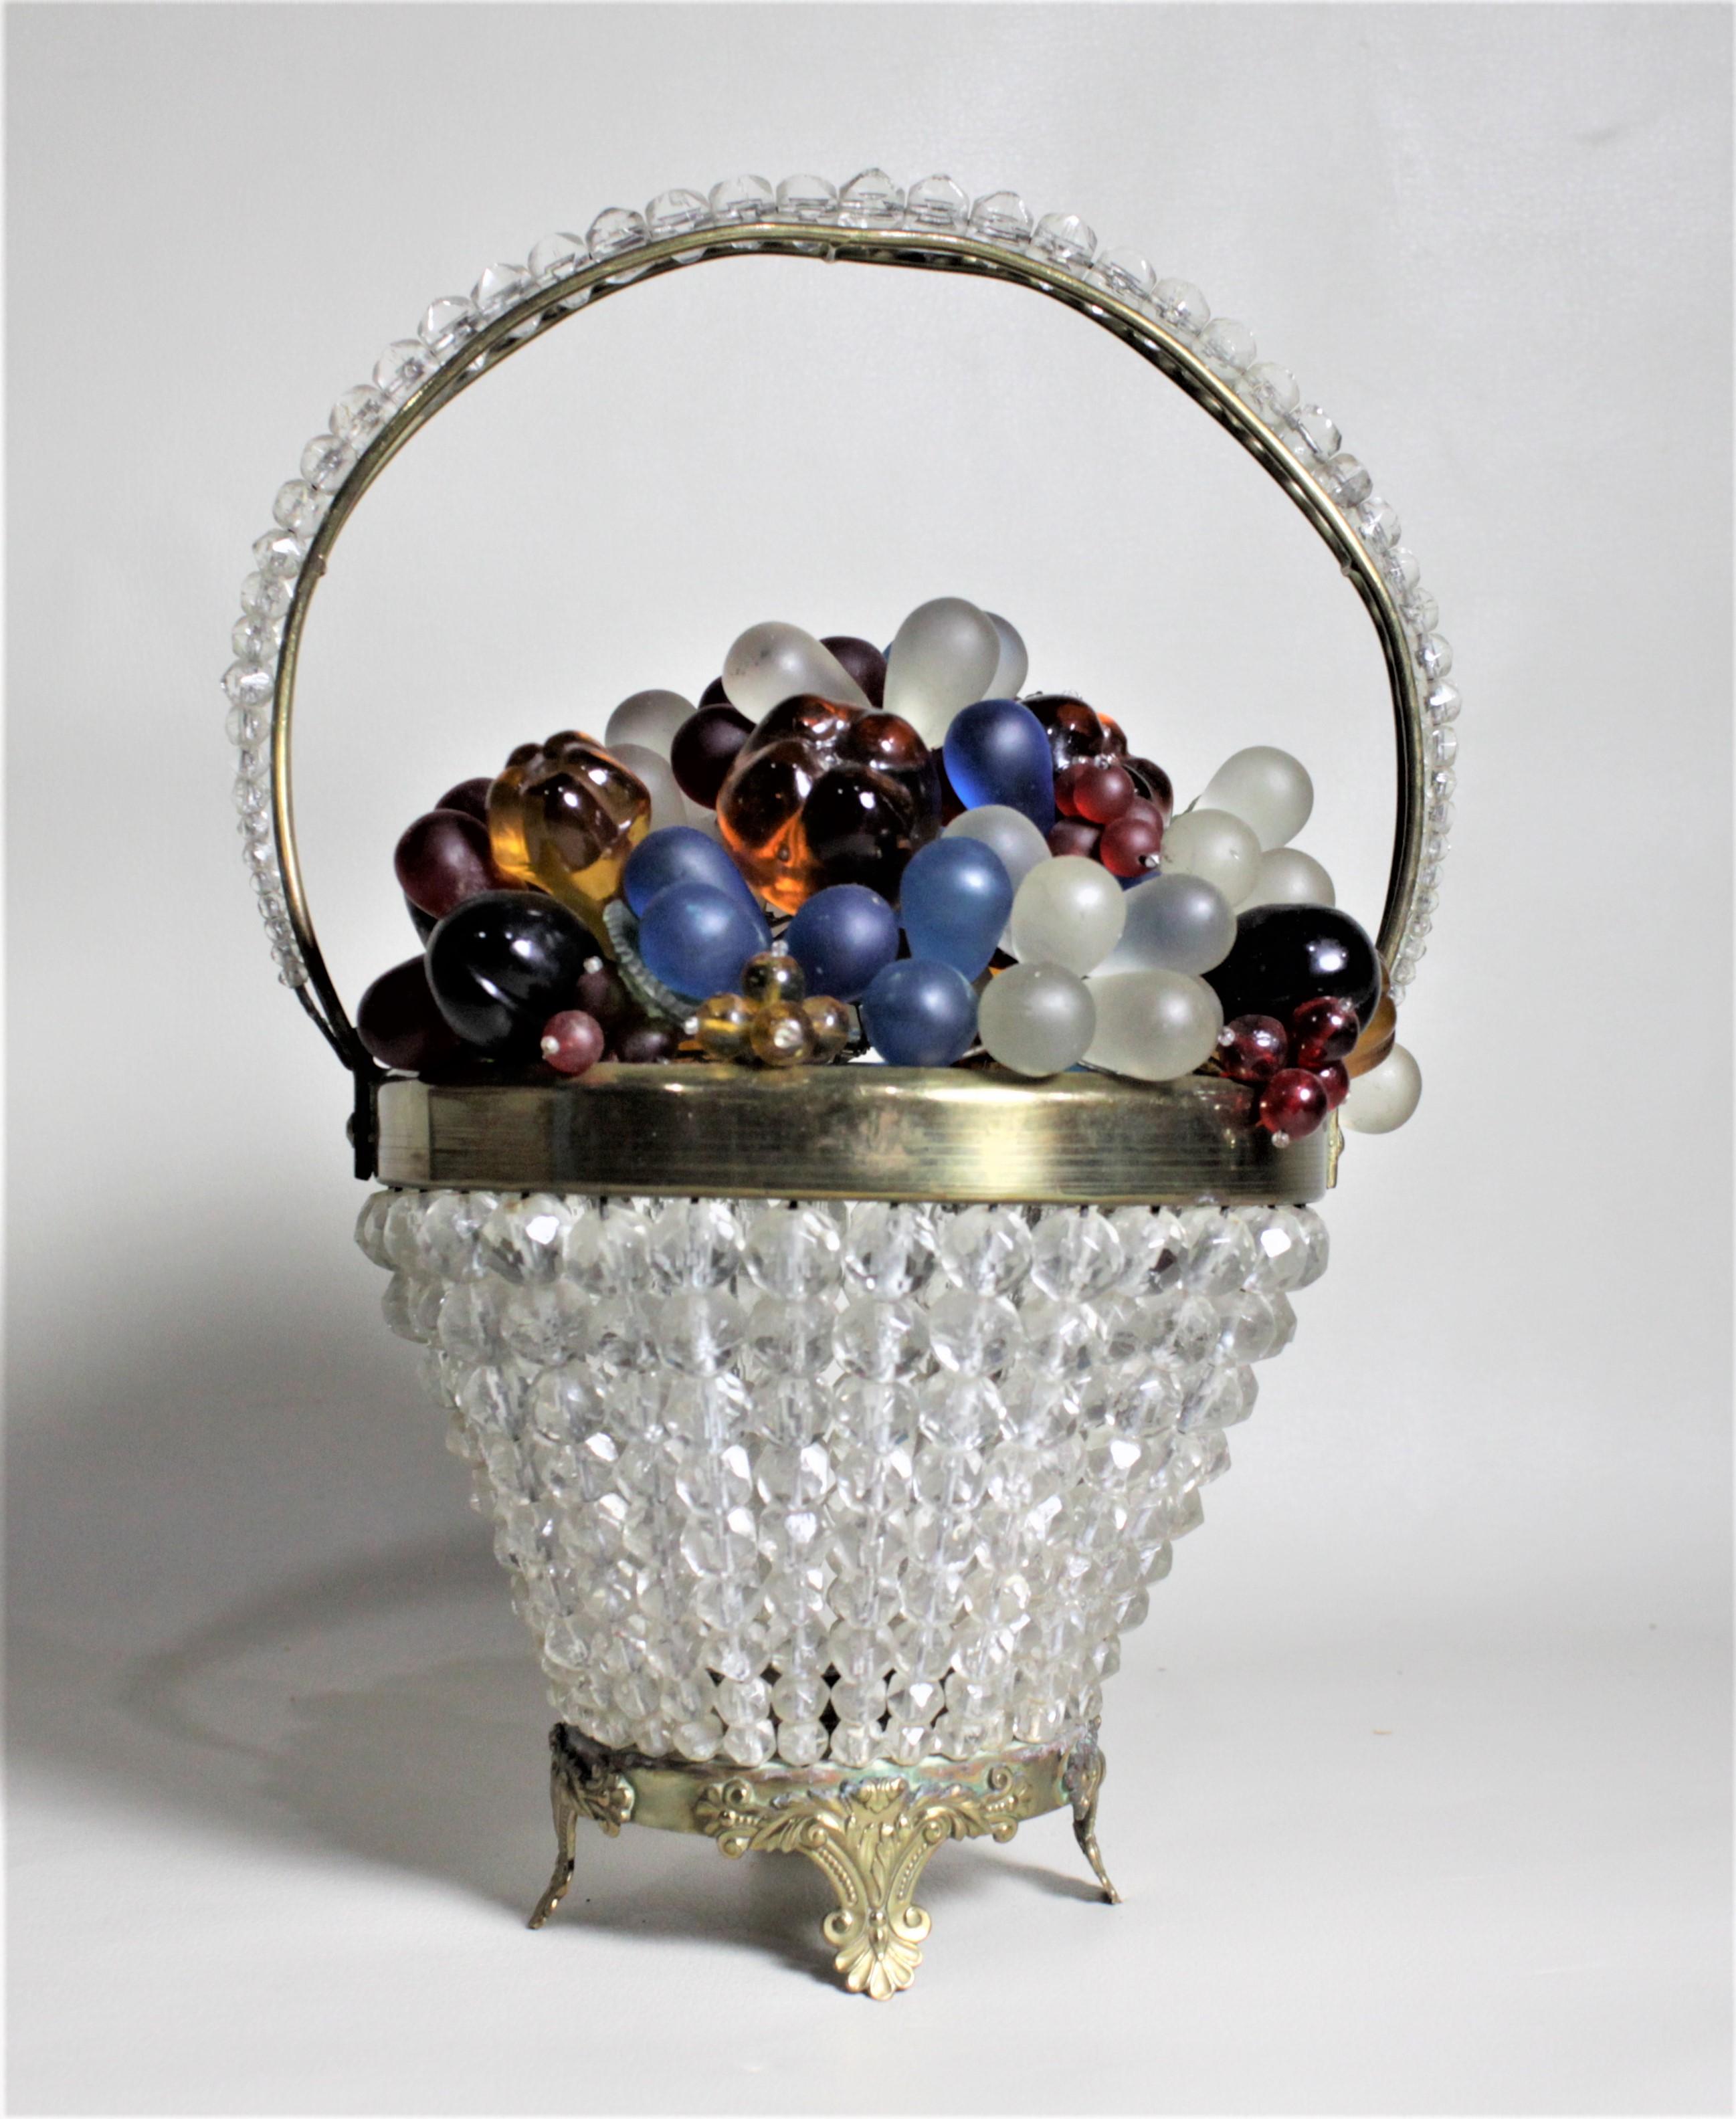 Cette corbeille à fruits et à fleurs en verre d'art figuratif a été produite en Tchécoslovaquie au milieu et à la fin des années 1930 dans le style Art déco de l'époque. La base est composée d'une série de perles transparentes à facettes qui